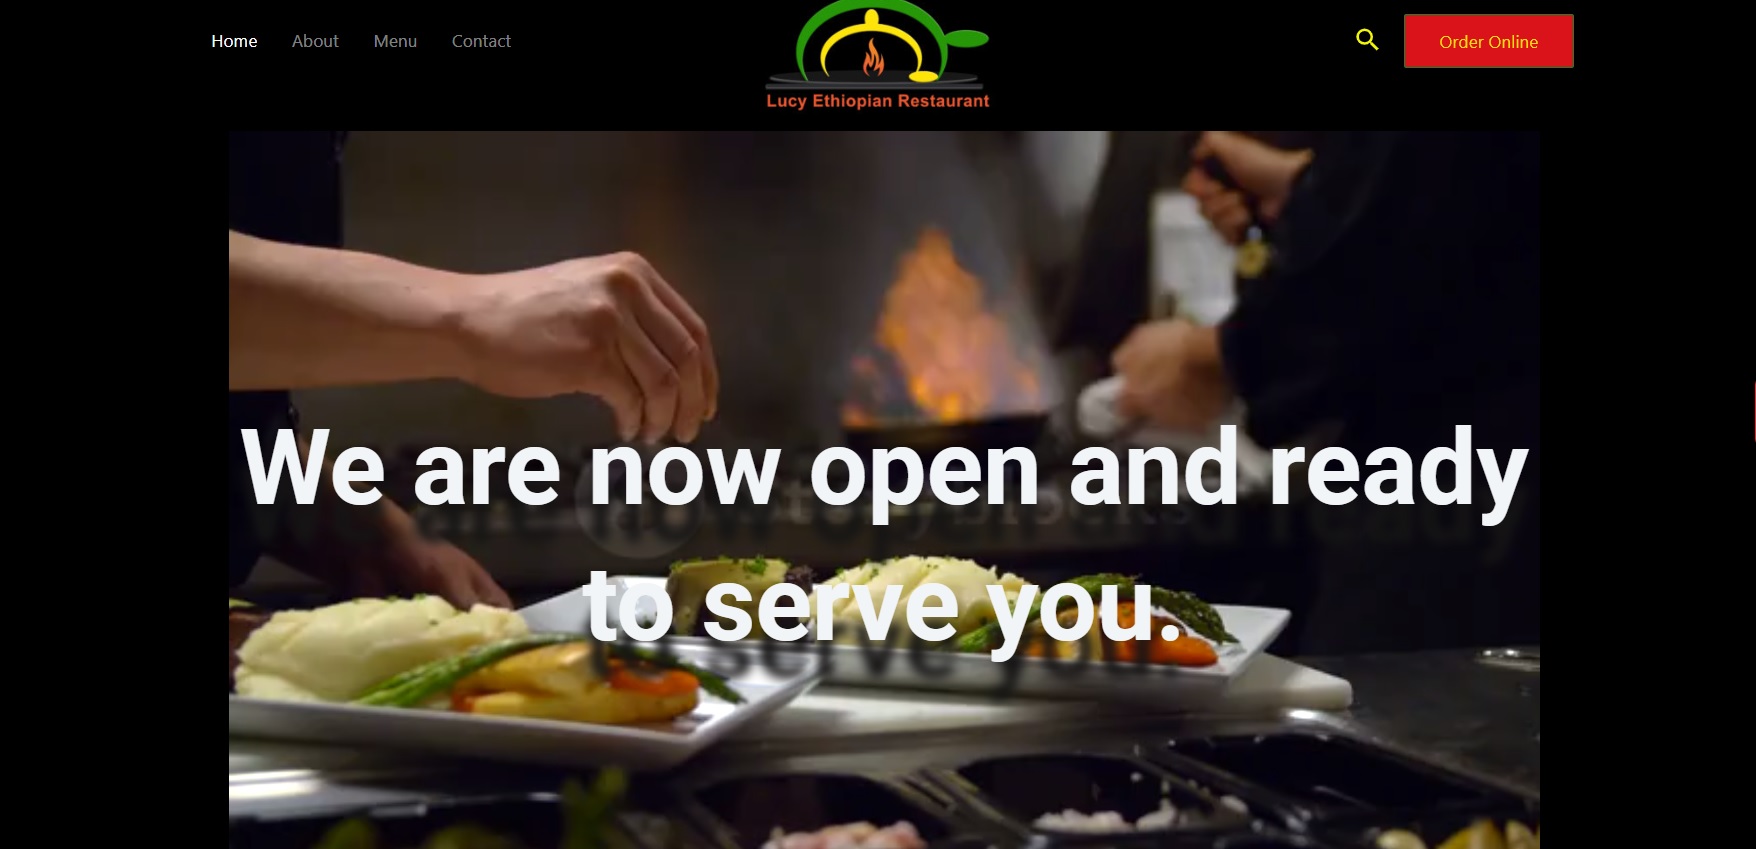 Lucy's Ethiopian restaurant website